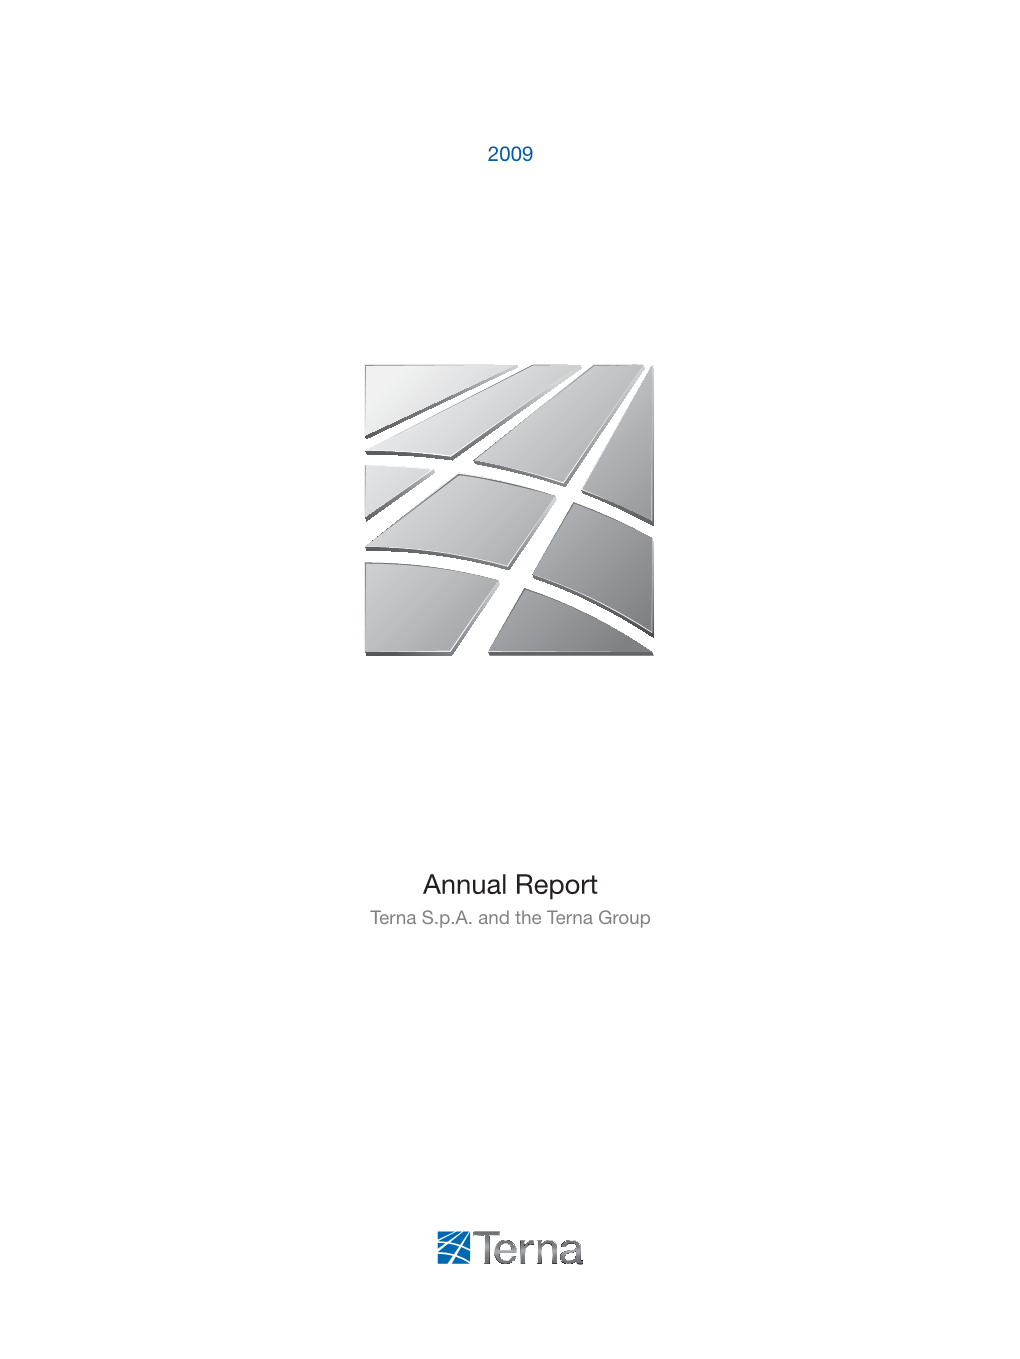 Annual Report Terna S.P.A